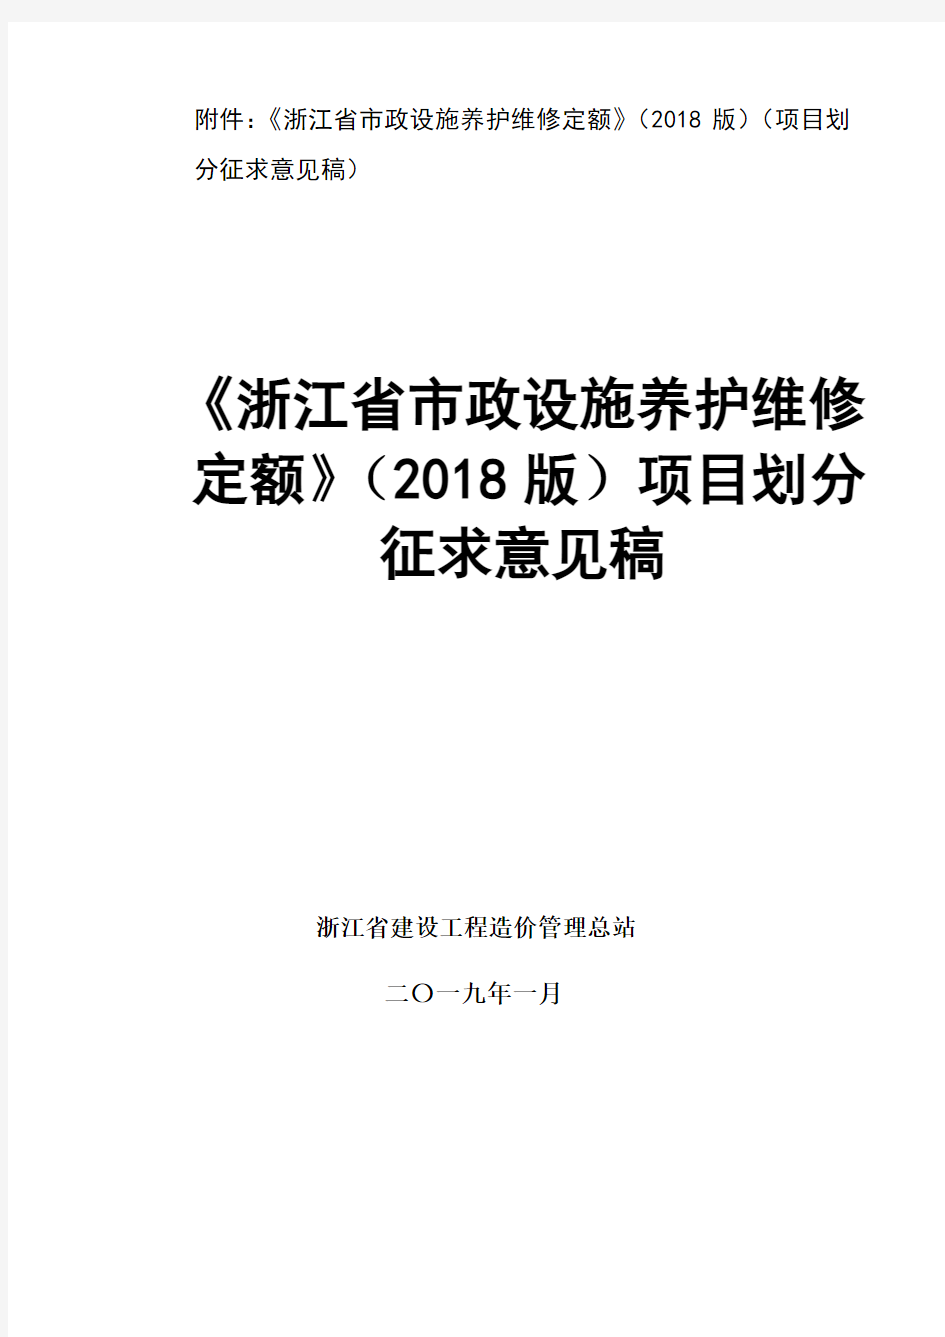 《浙江省市政设施养护维修定额》(2018版征求意见稿